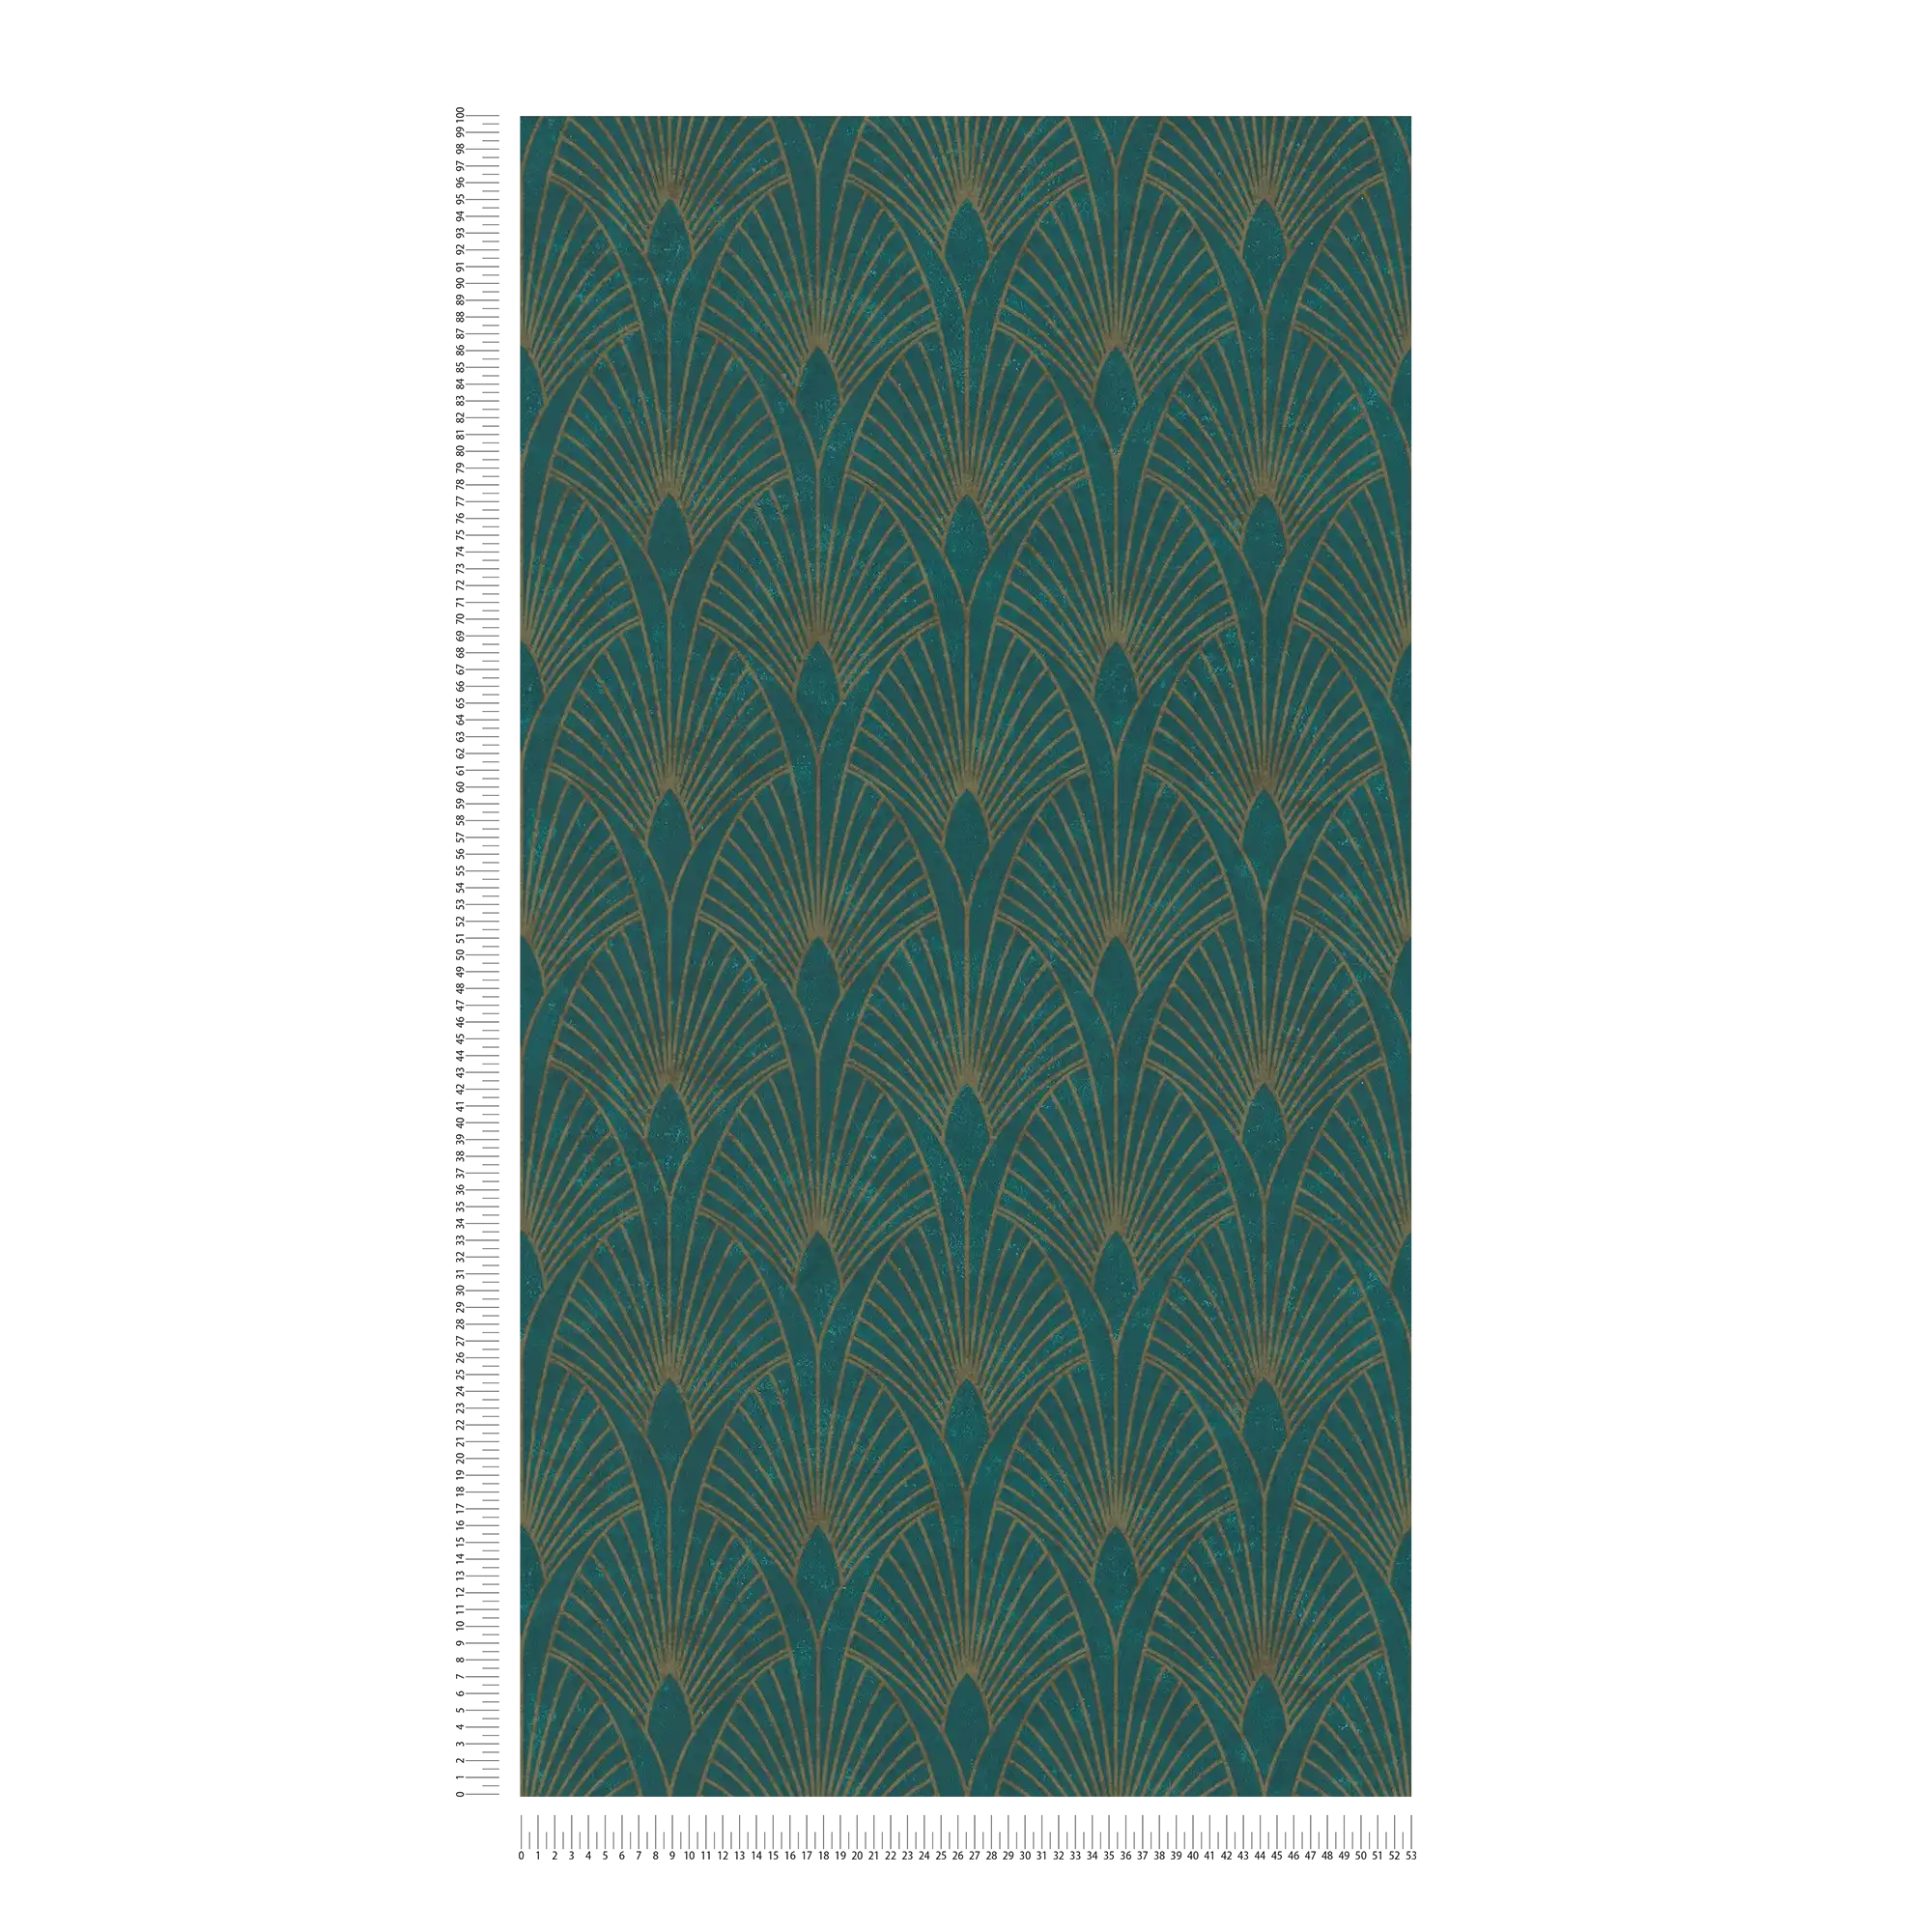             Zelfklevend behangpapier | Art Deco design met metallic effect - groen, metallic
        